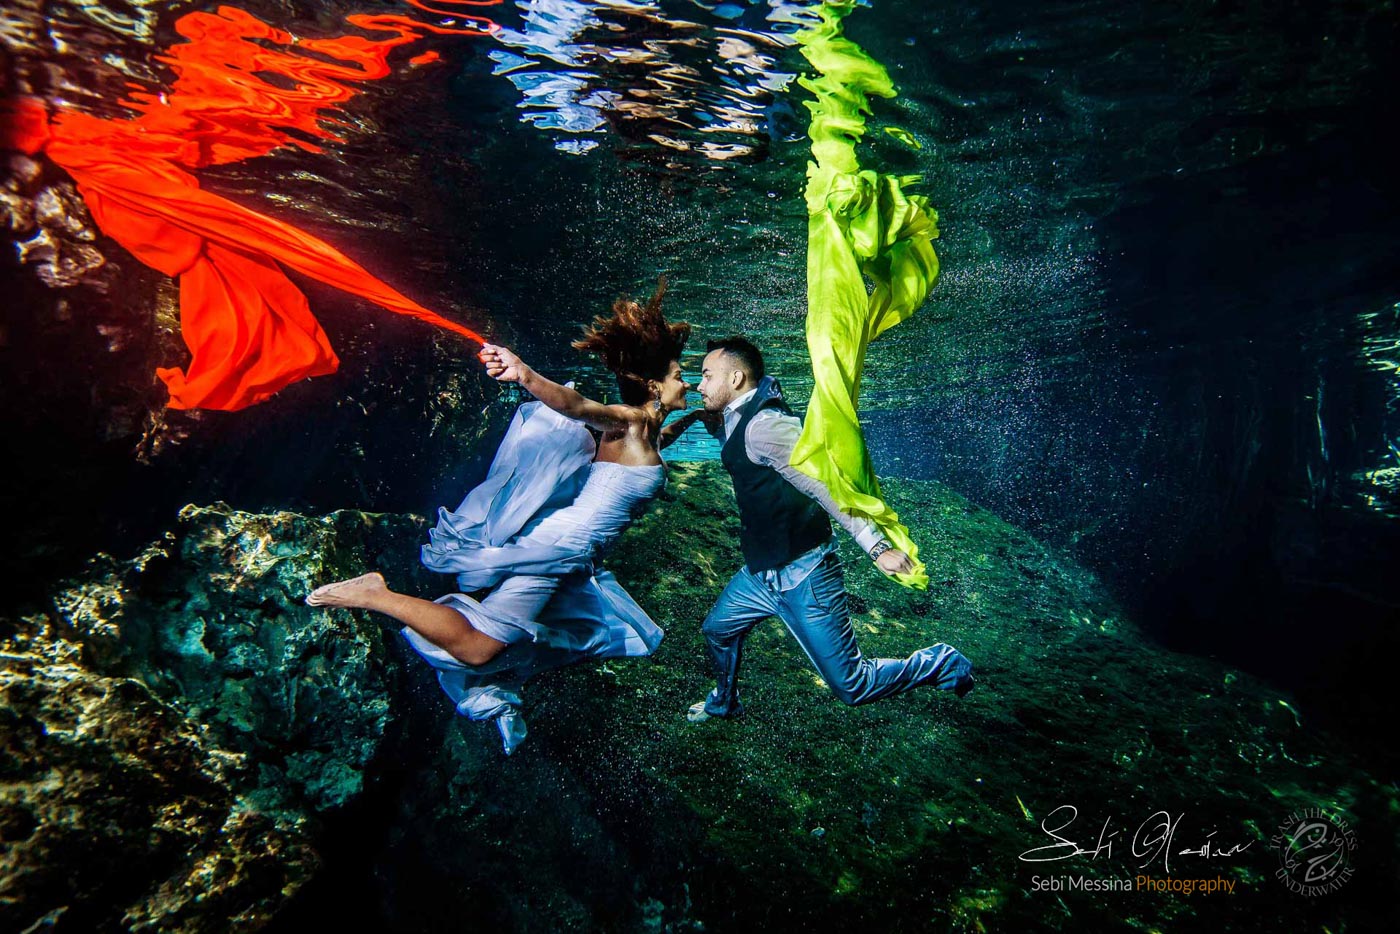 Trash The Dress Cenote - Sebi Messina Photography